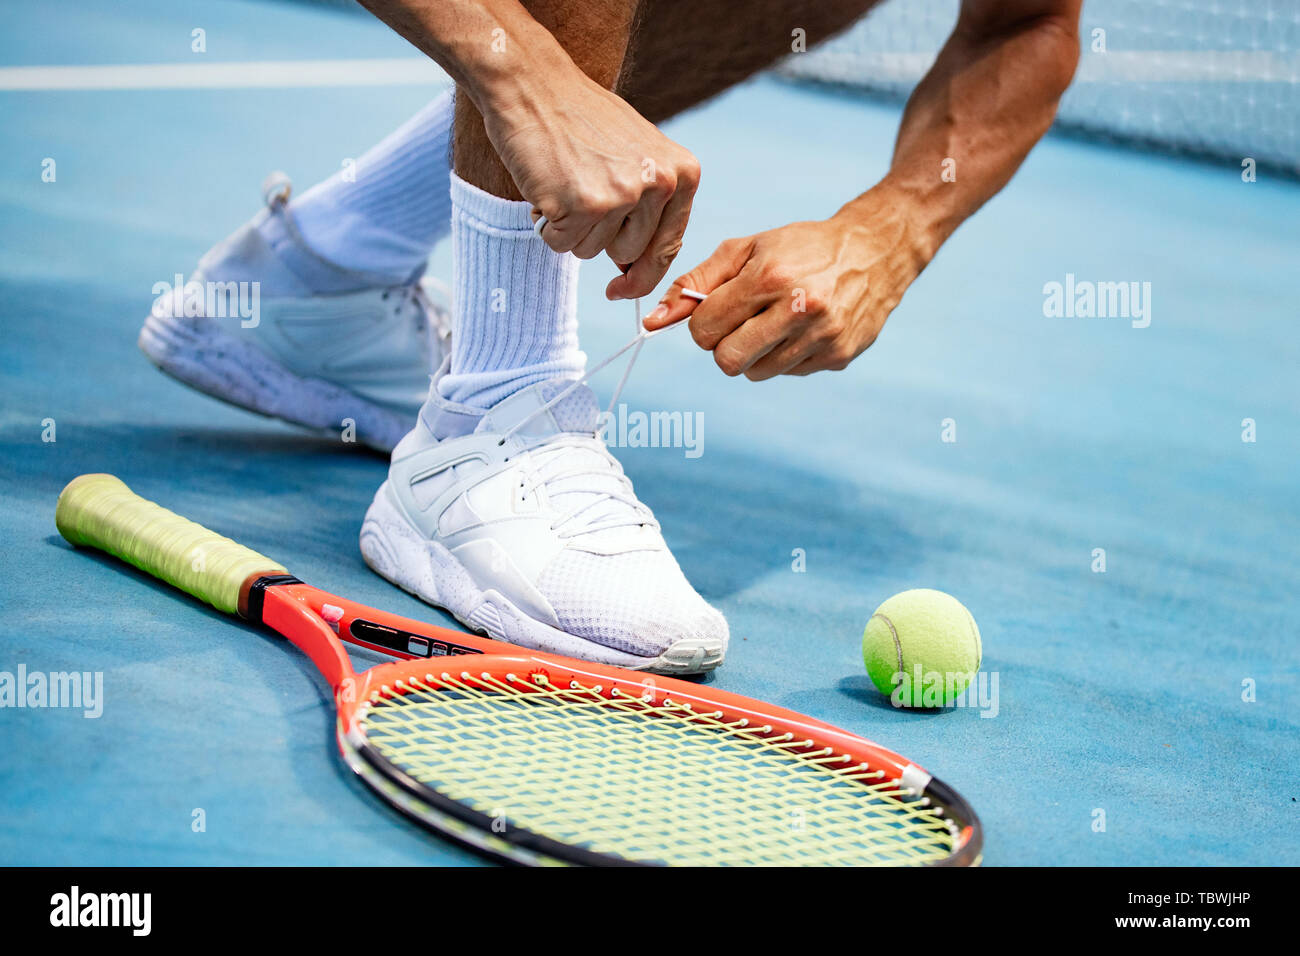 Atleta di Tennis player sta preparando la legatura lacci delle scarpe durante il gioco all'aperto Foto Stock